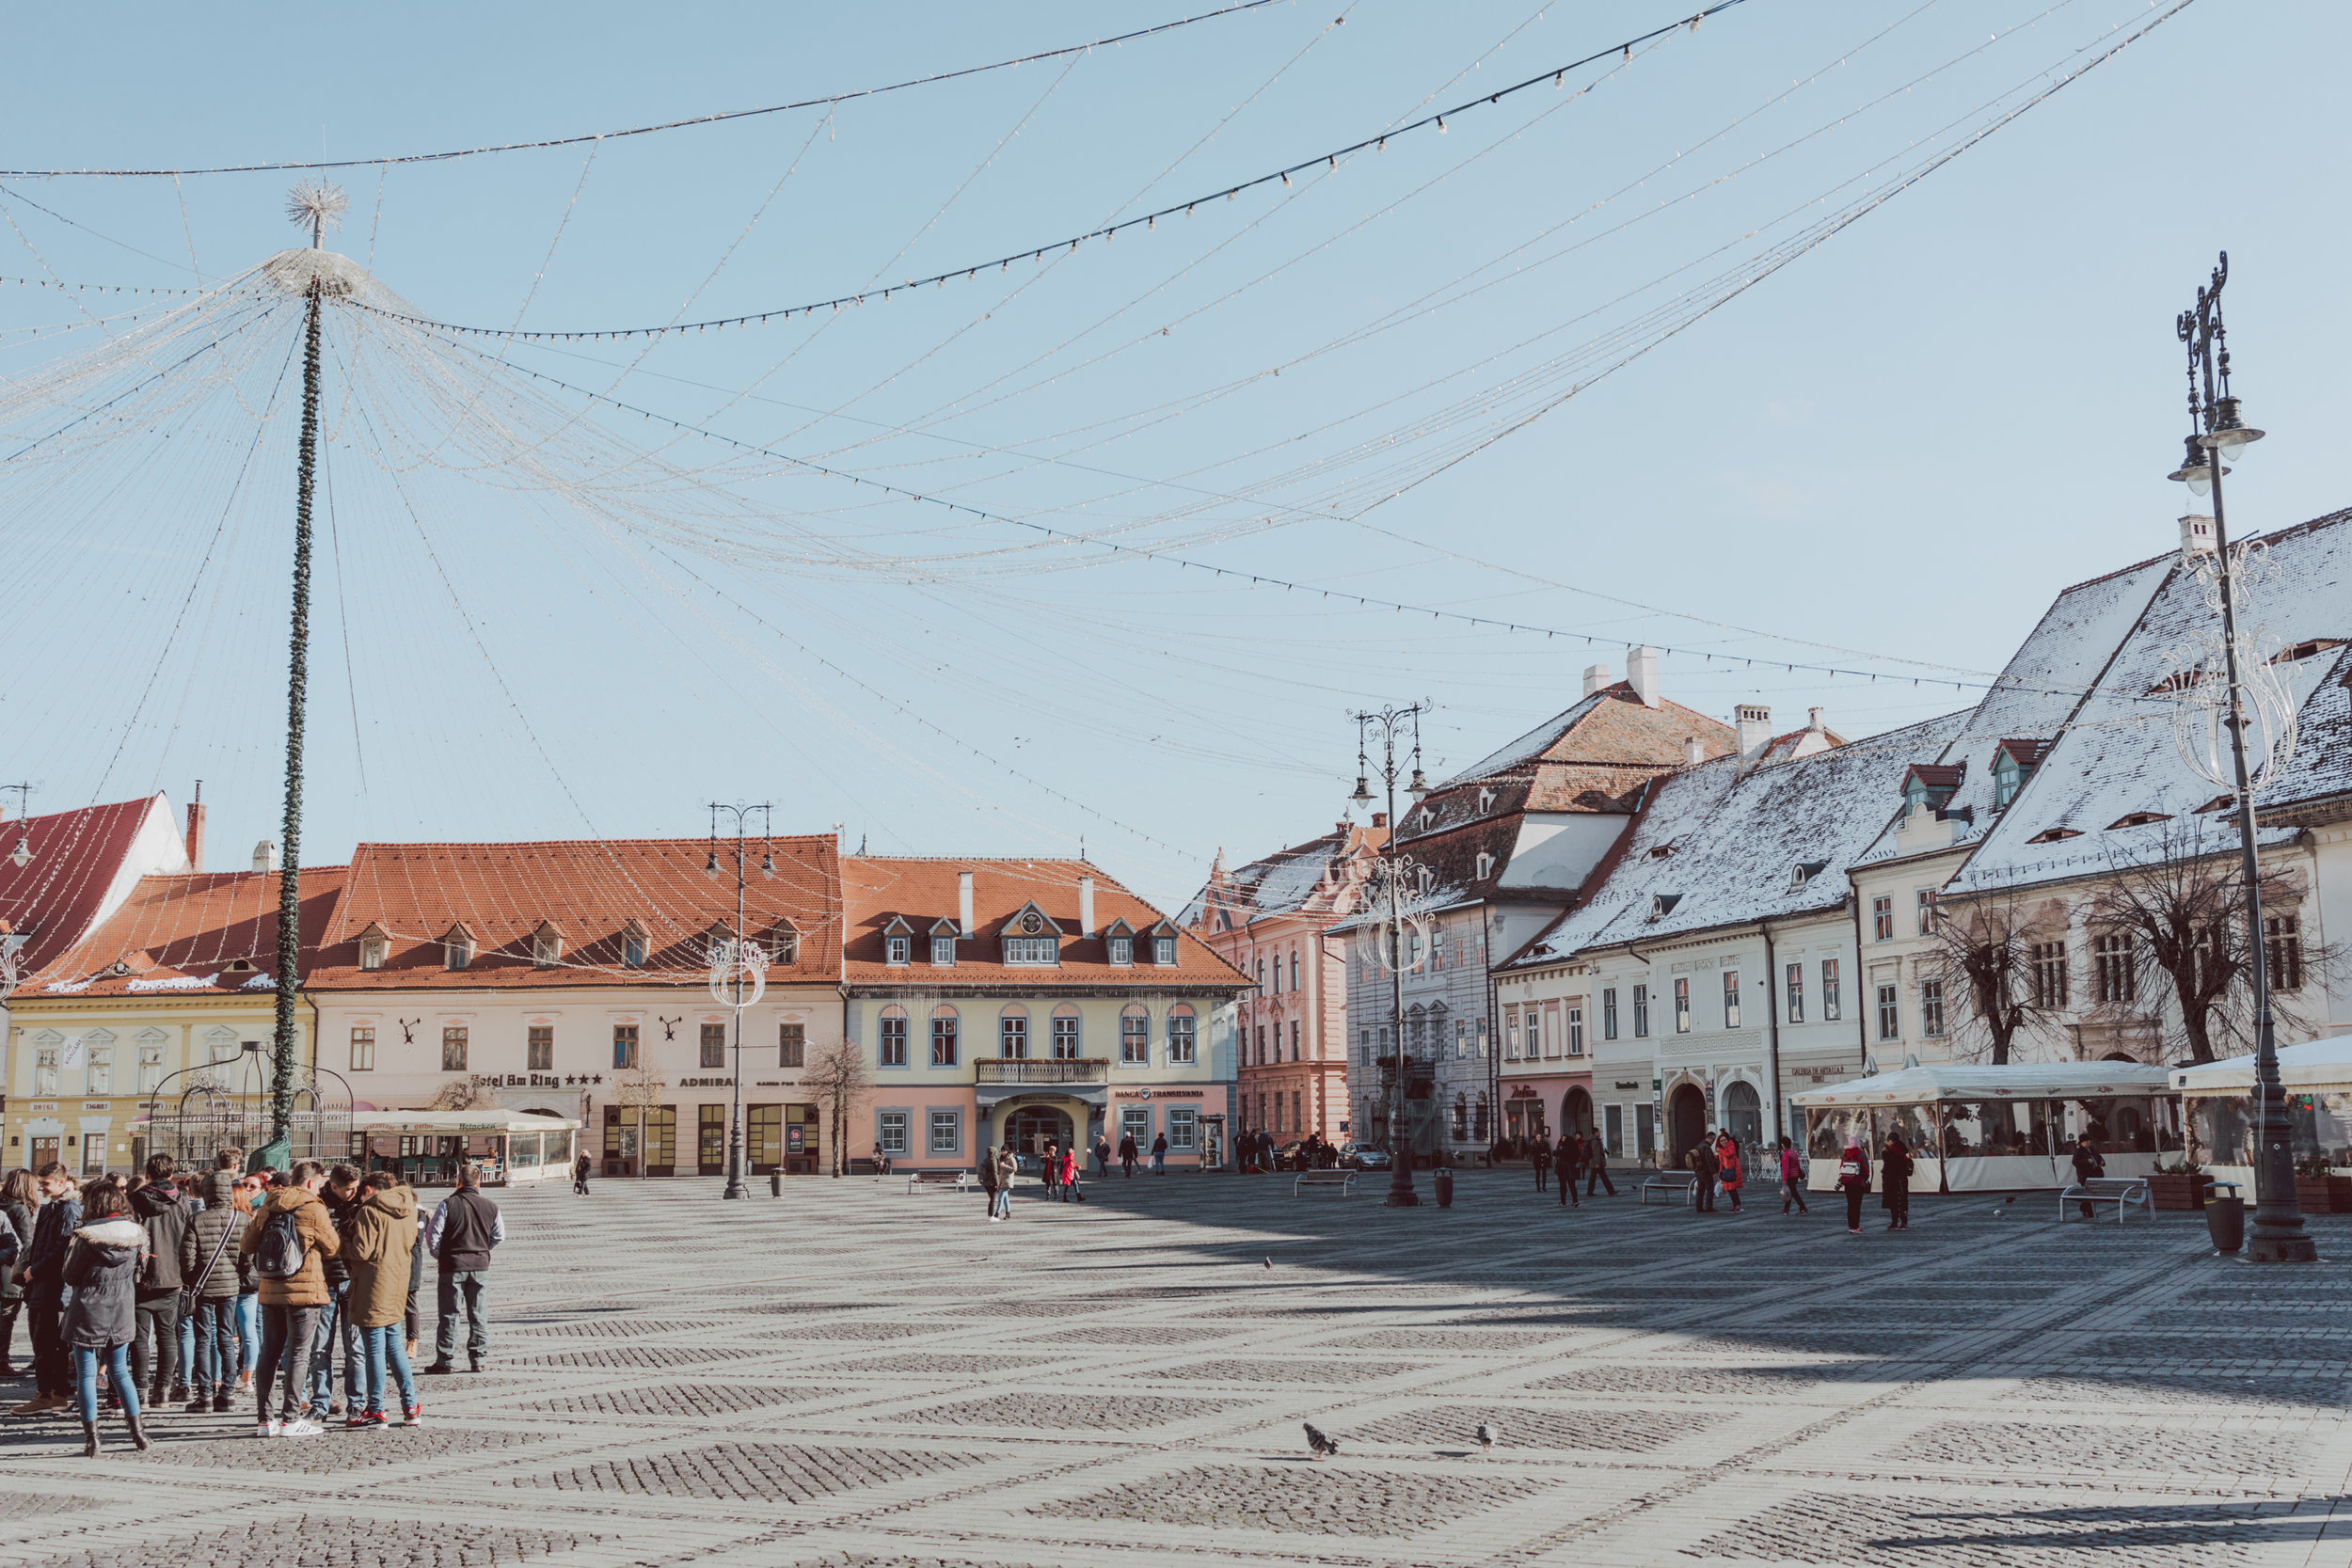 Piata Mare Plaza Sibiu Romania